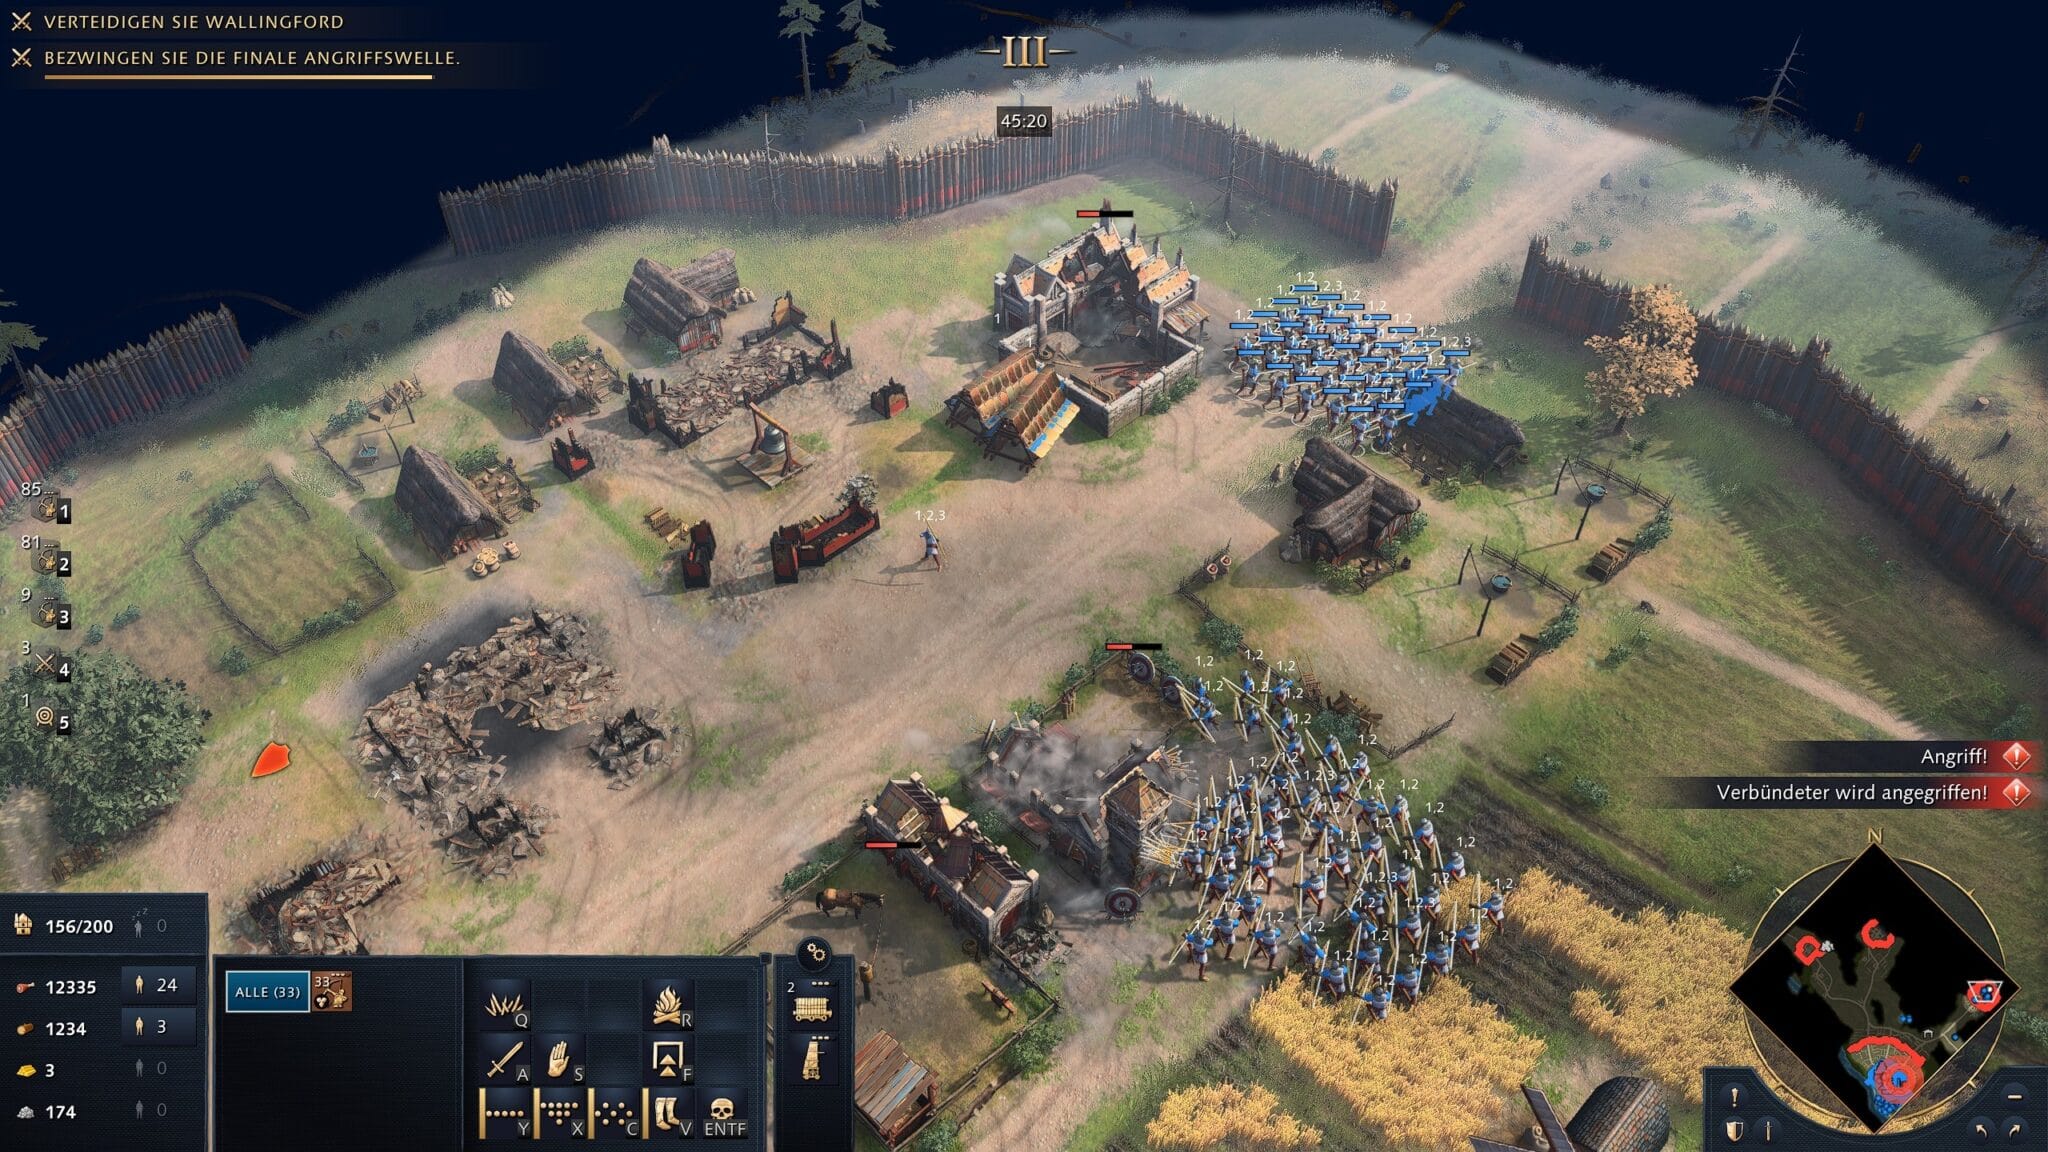 Для игроков с одной игрой, Age of Empires 4 в настоящее время предлагает практически только кампанию. Здесь мы уничтожили чрезвычайно сильно защищенные лагеря противника, хотя на самом деле должны были защищать только город.